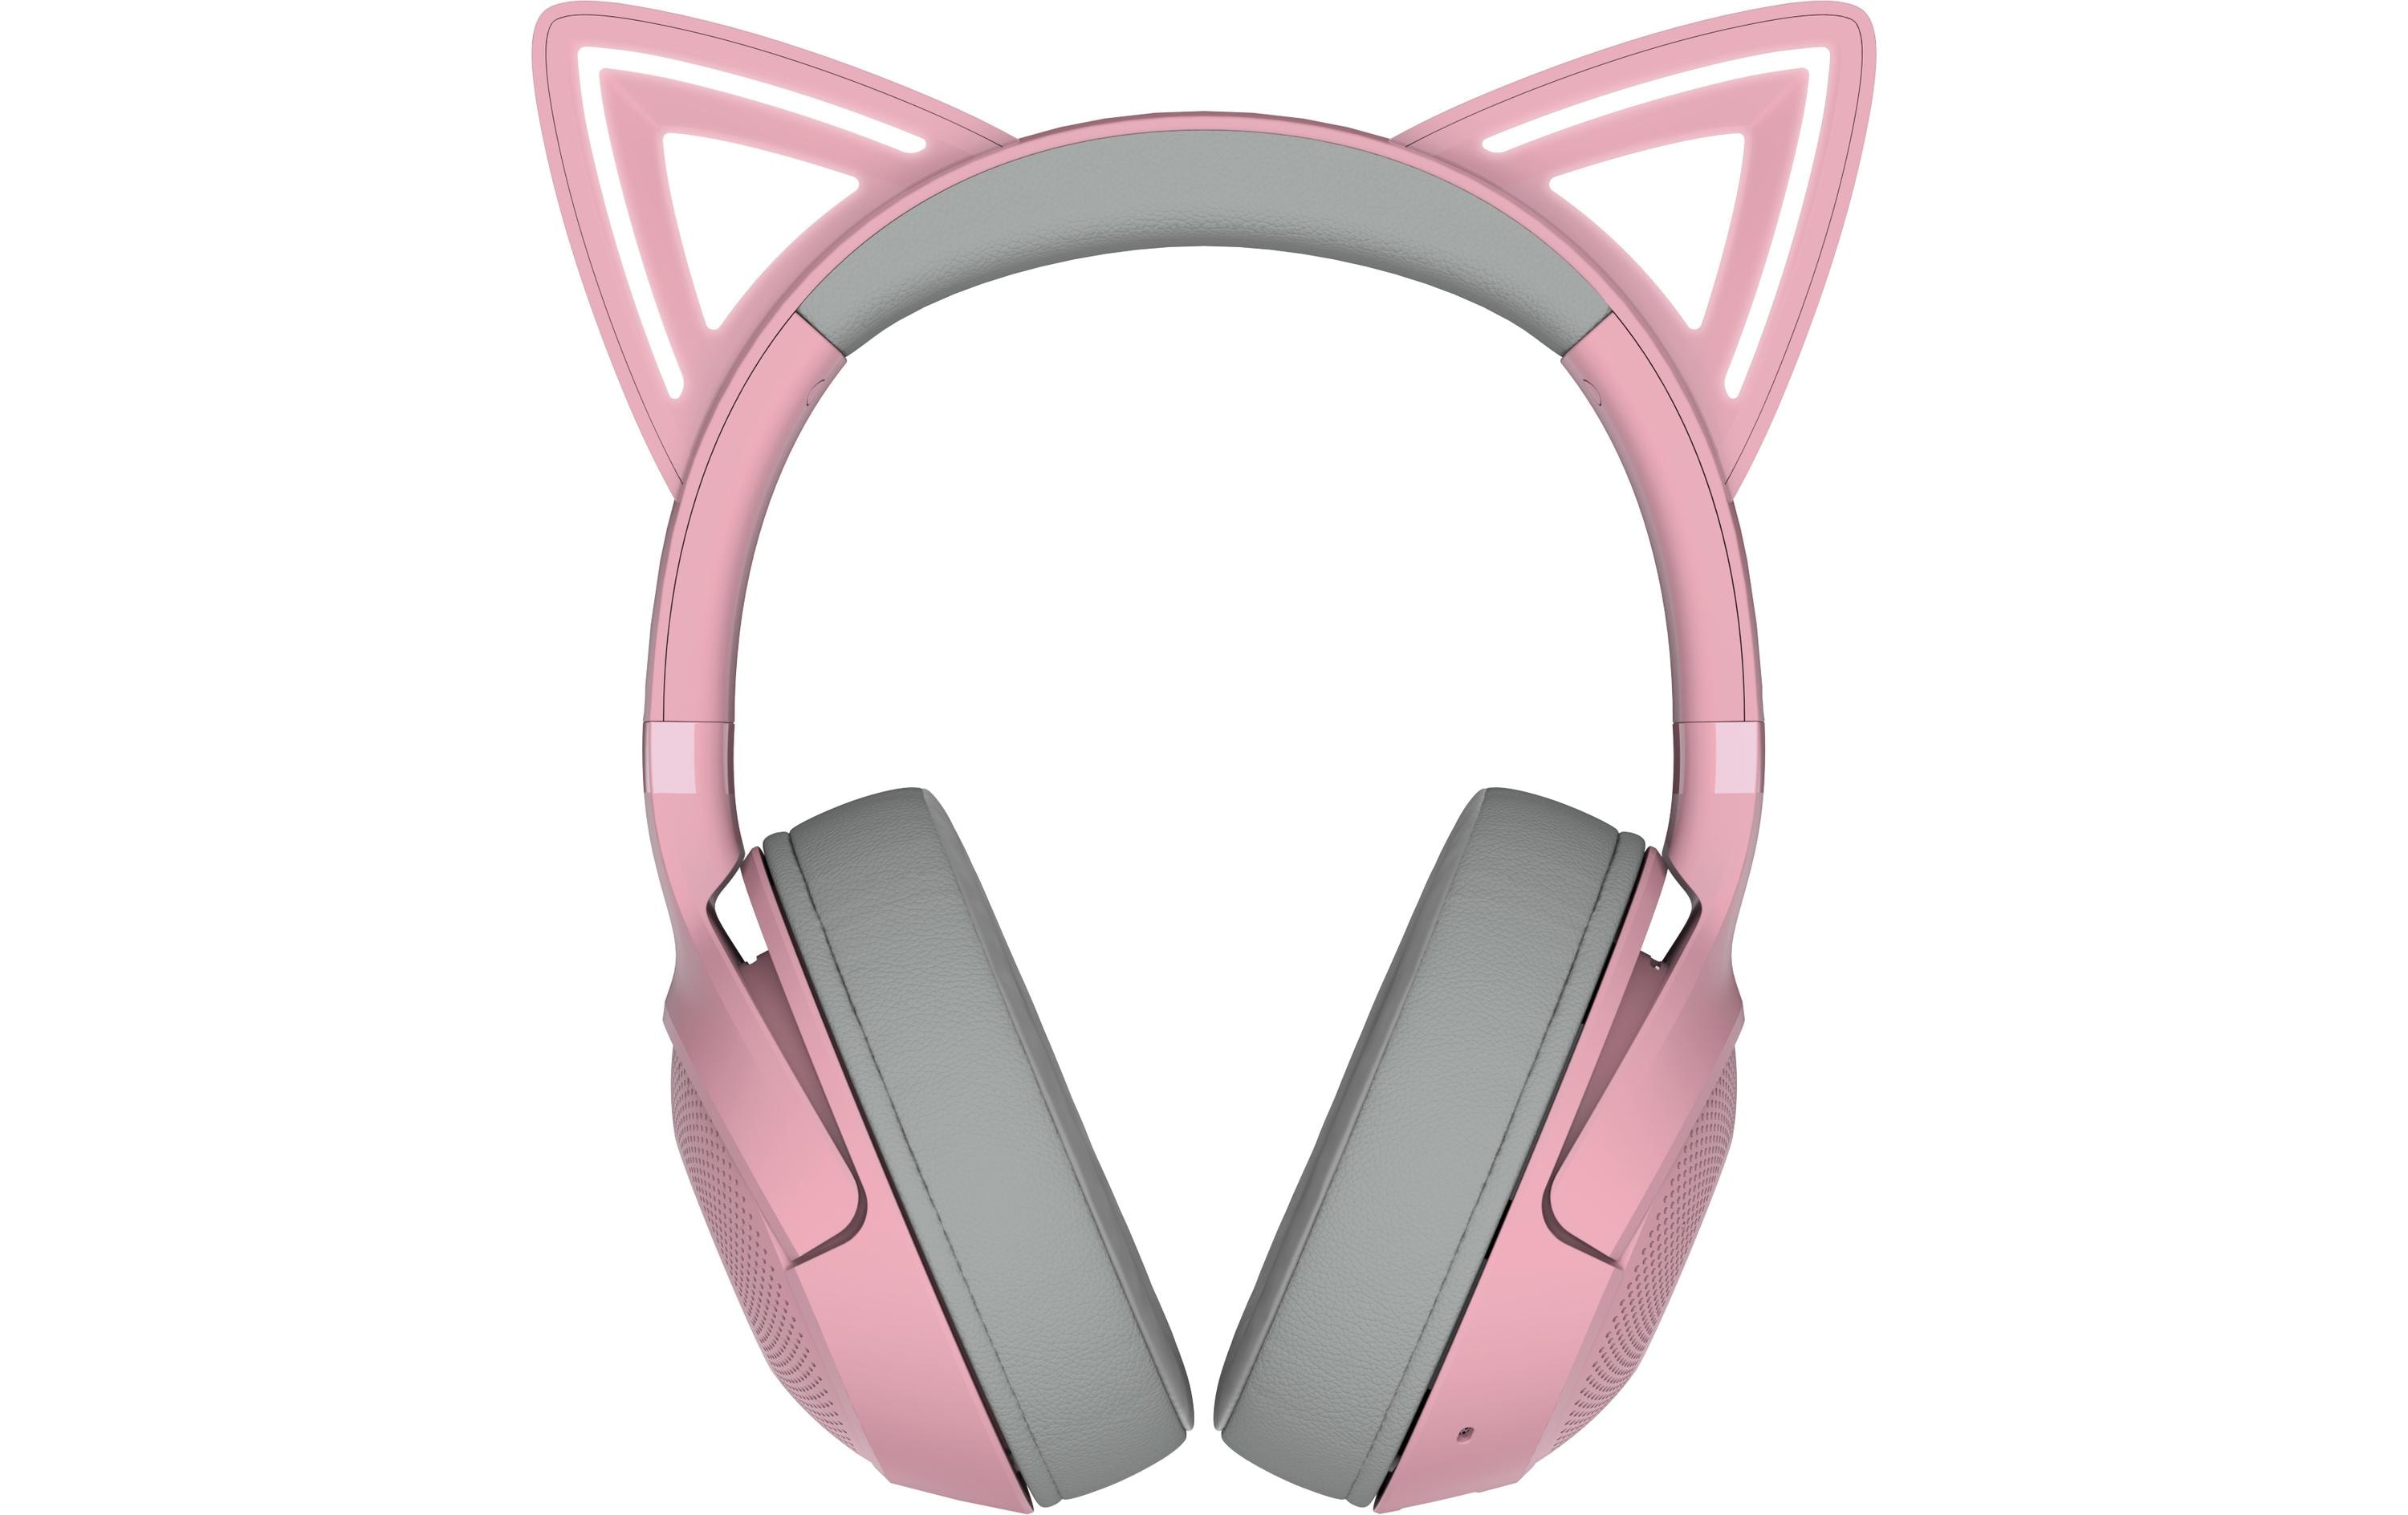 Razer Headset Kraken Kitty BT V2 Pink